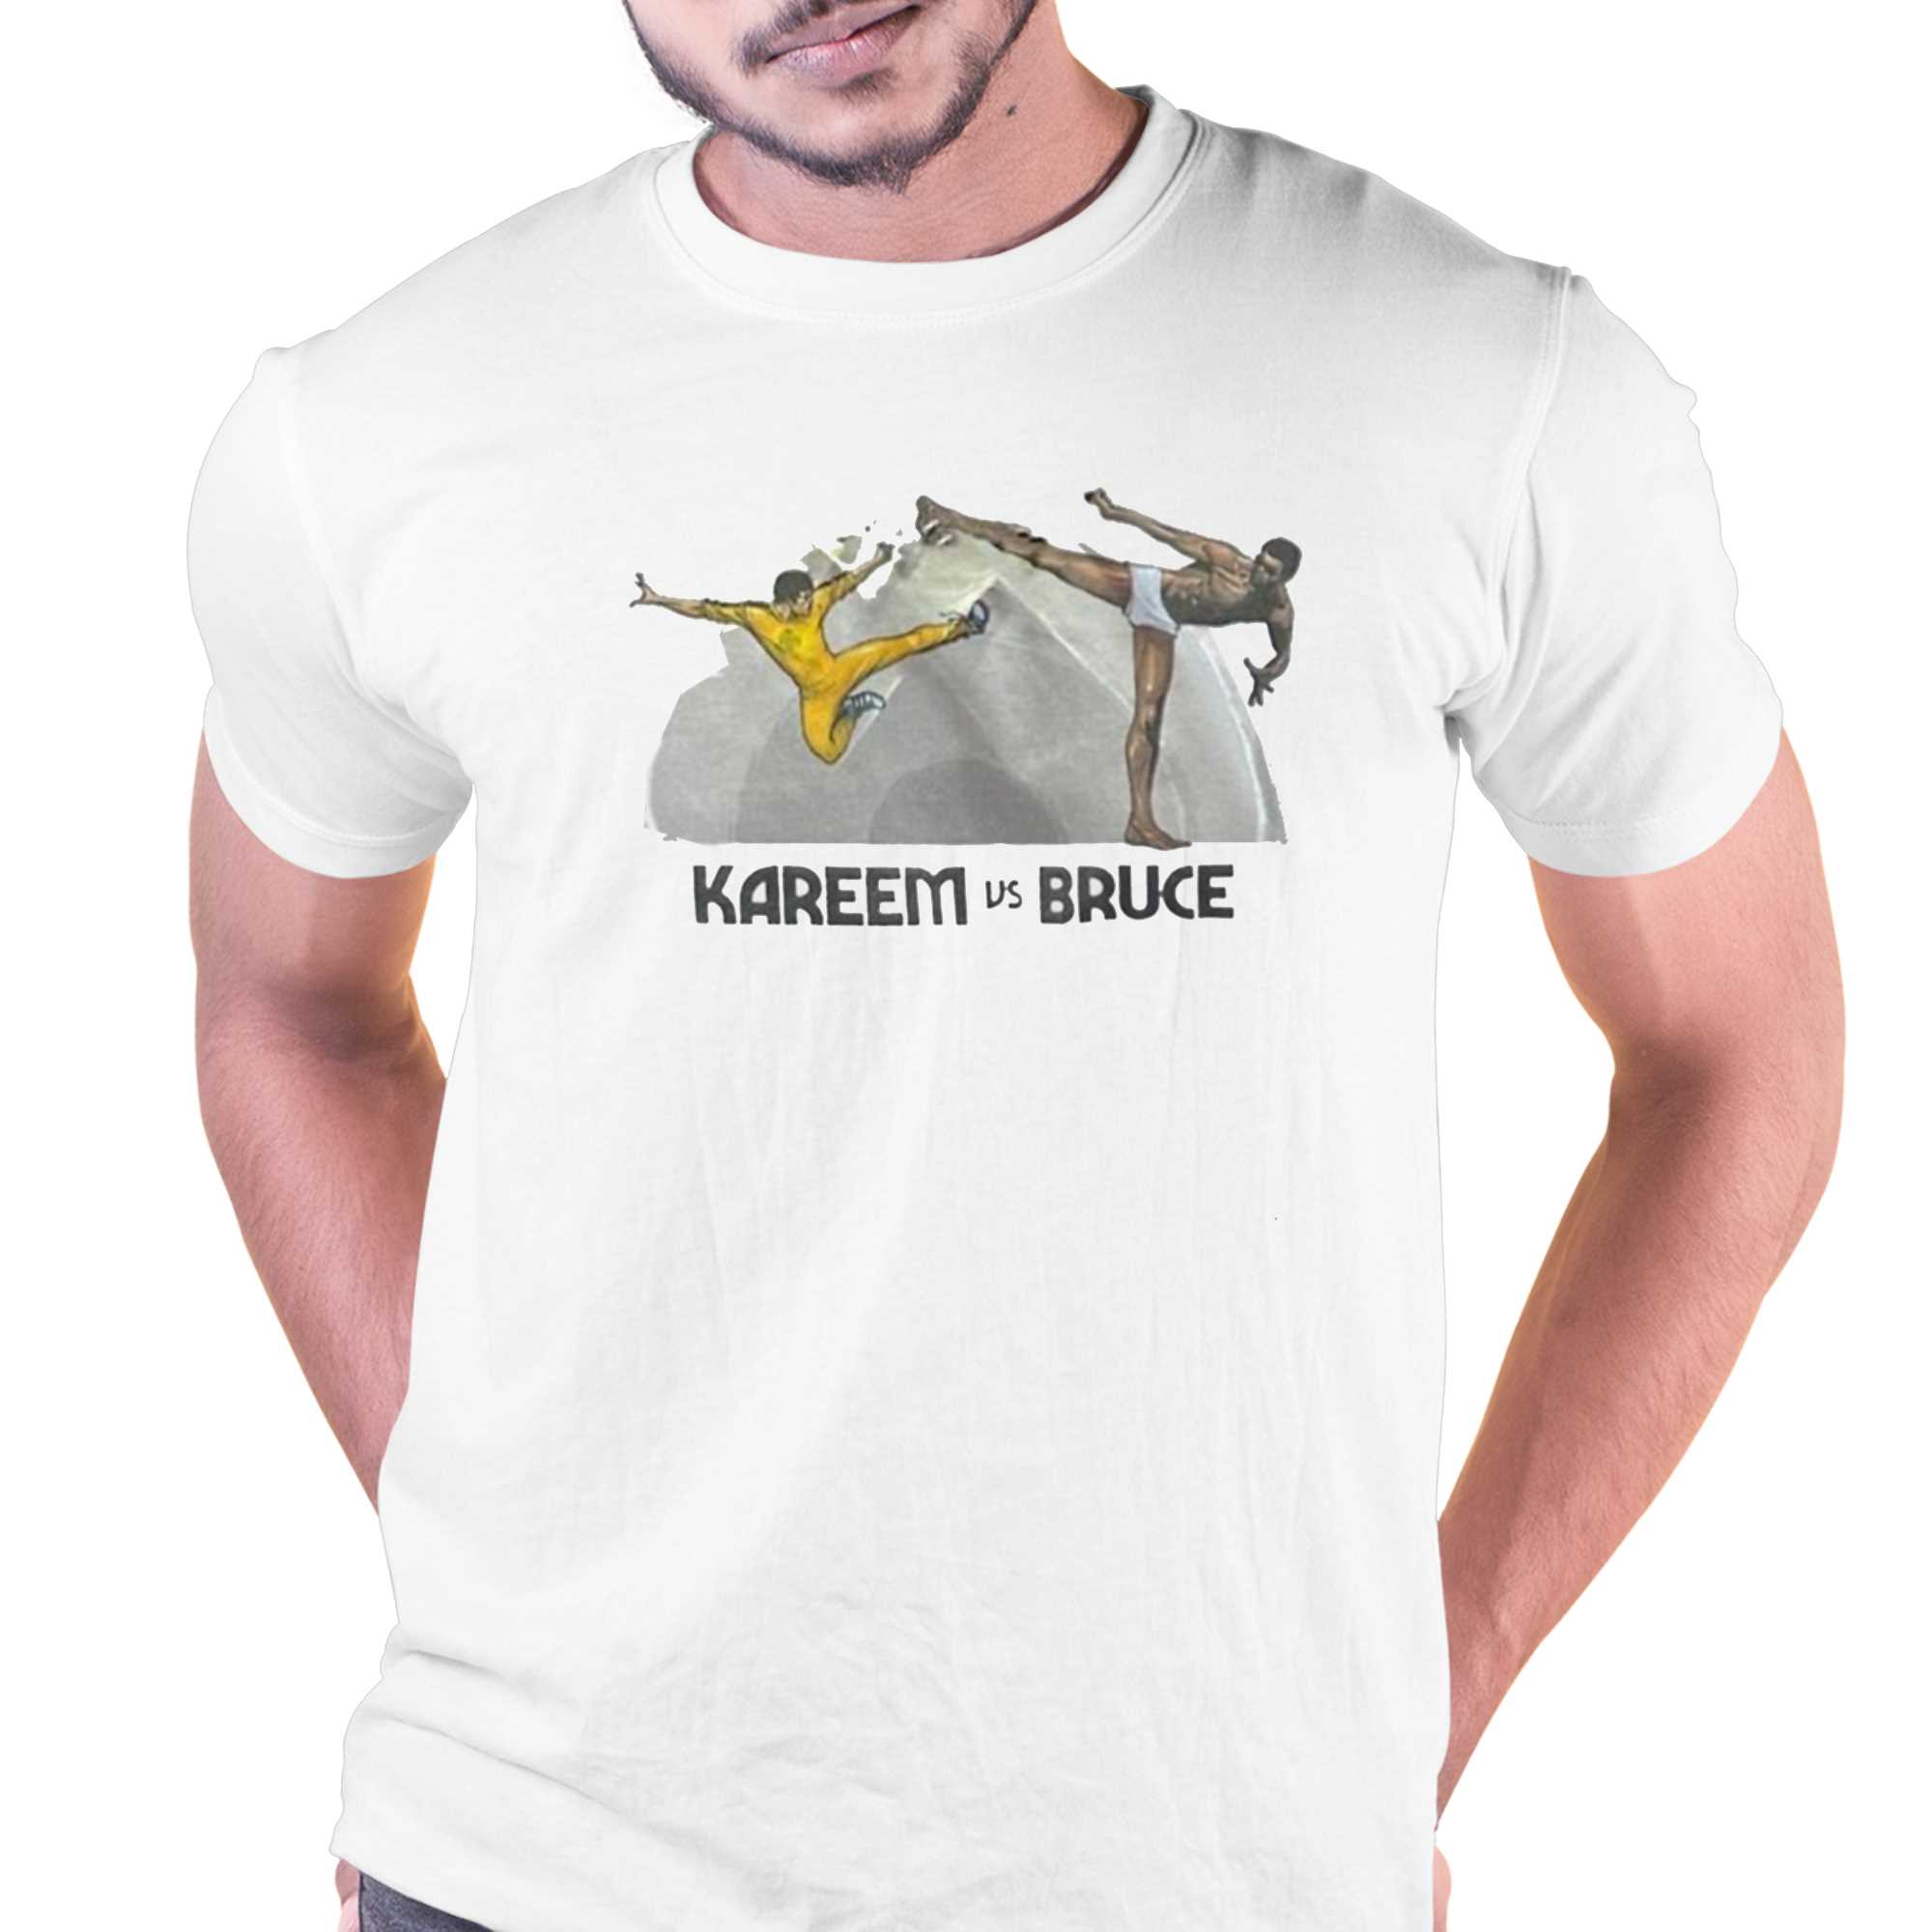 Kareem Abdul-jabbar Kareem Vs Bruce Shirt